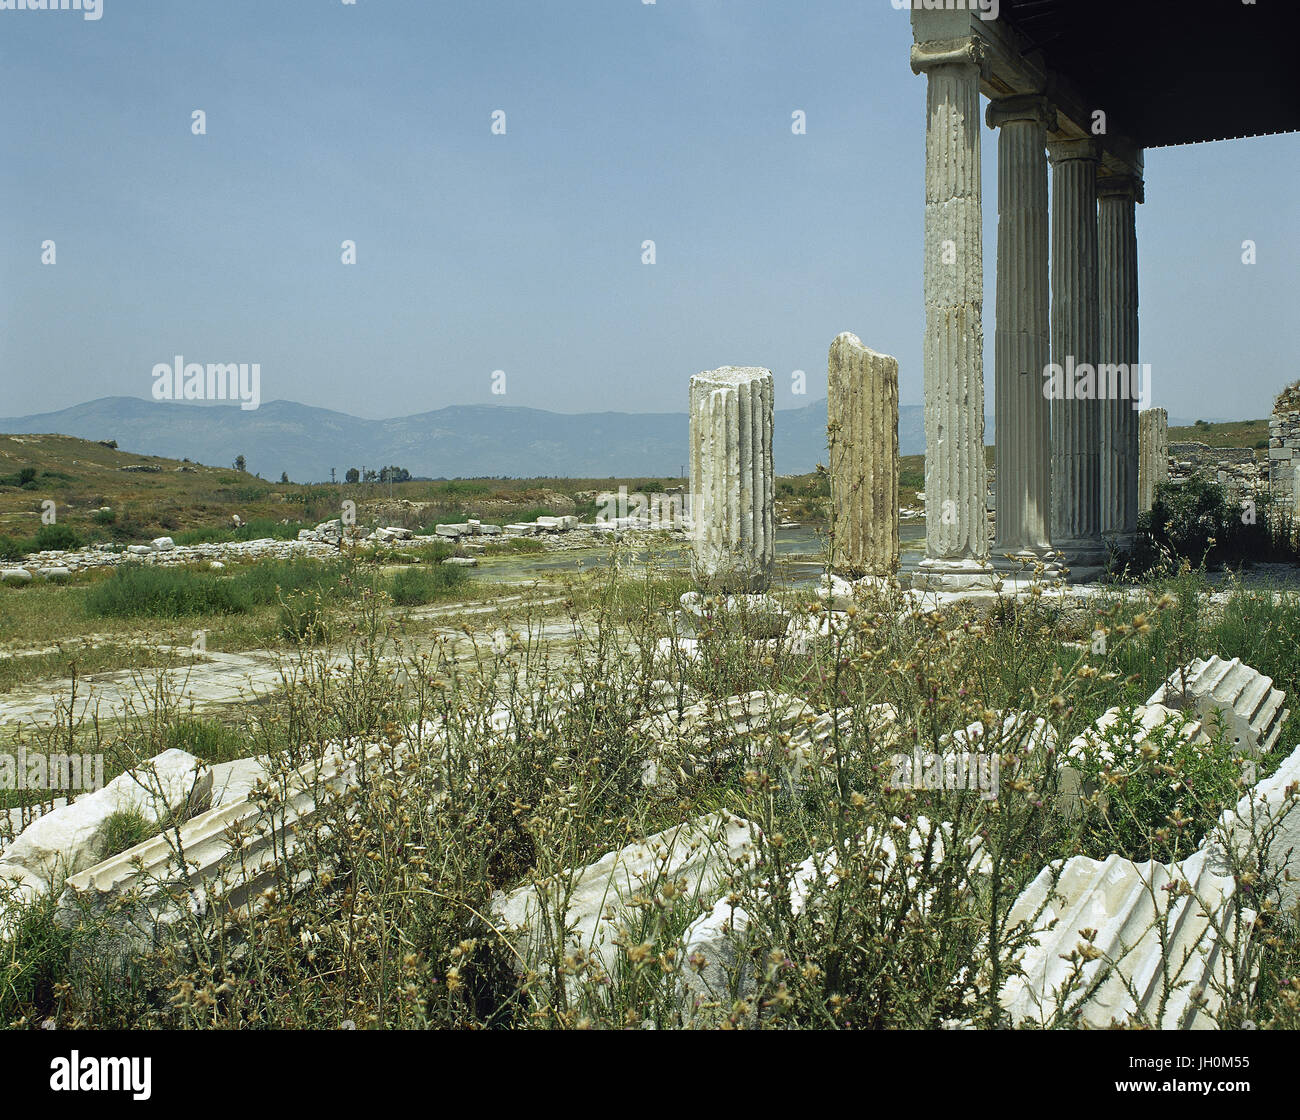 La Turchia. Mileto. Antica città greca sulla costa dell'Anatolia. Portico di northern agora. Rovine. Foto Stock